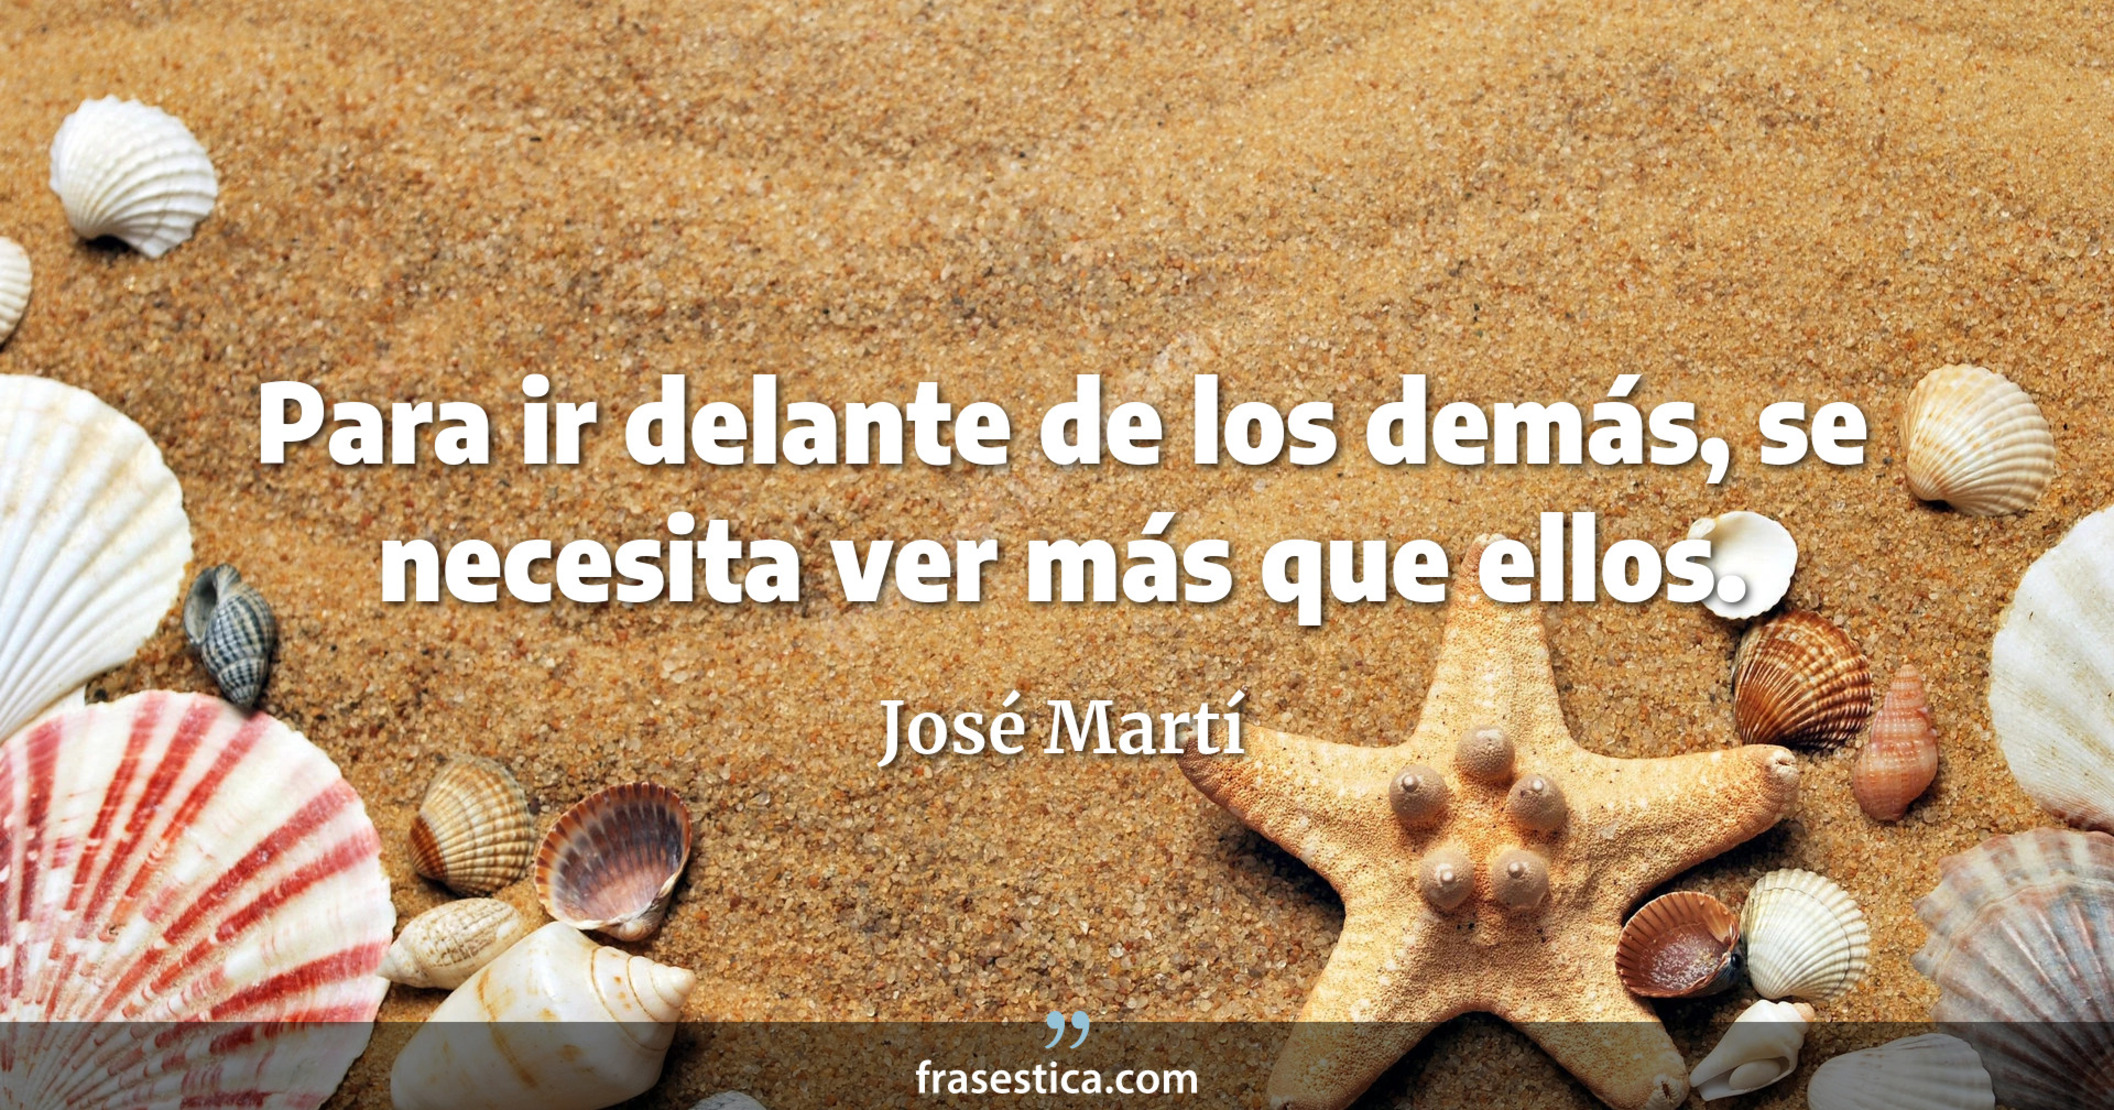 Para ir delante de los demás, se necesita ver más que ellos. - José Martí